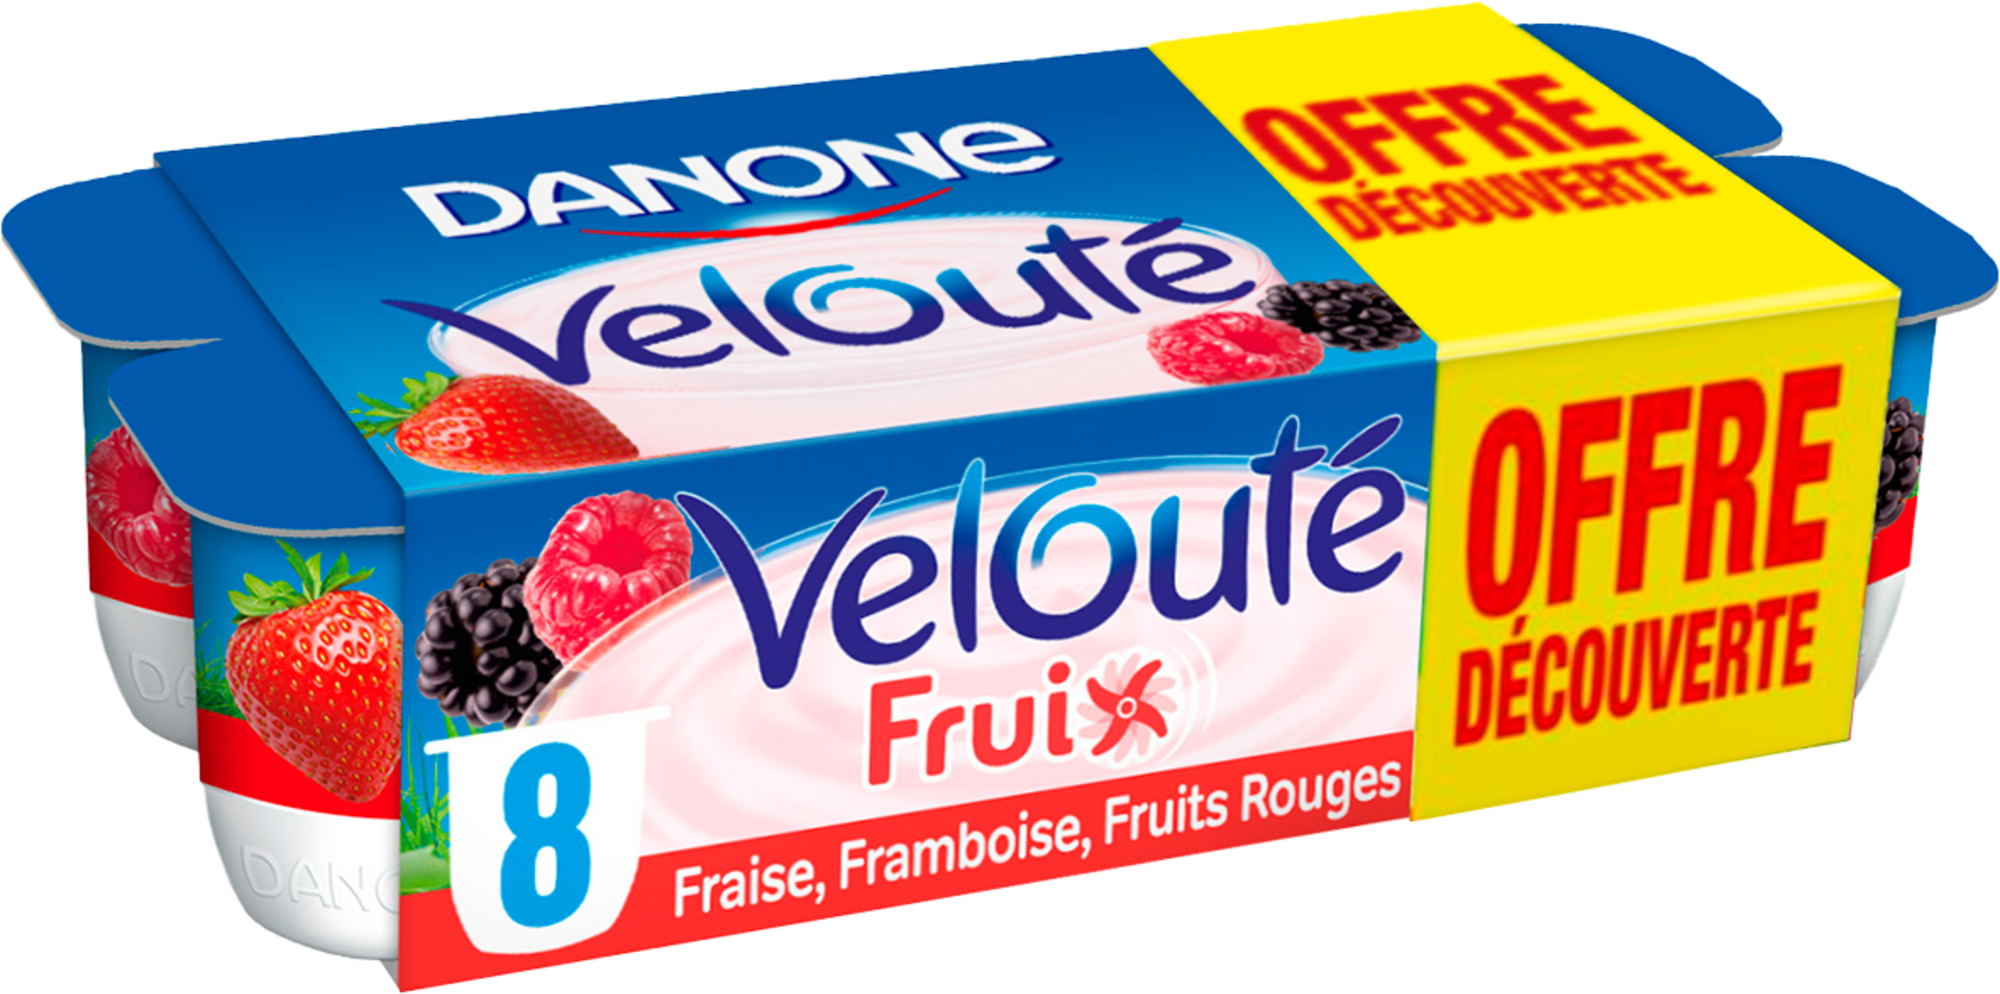 Velouté Fruix Fraise, Framboise, Fruits rouges Offre Découverte